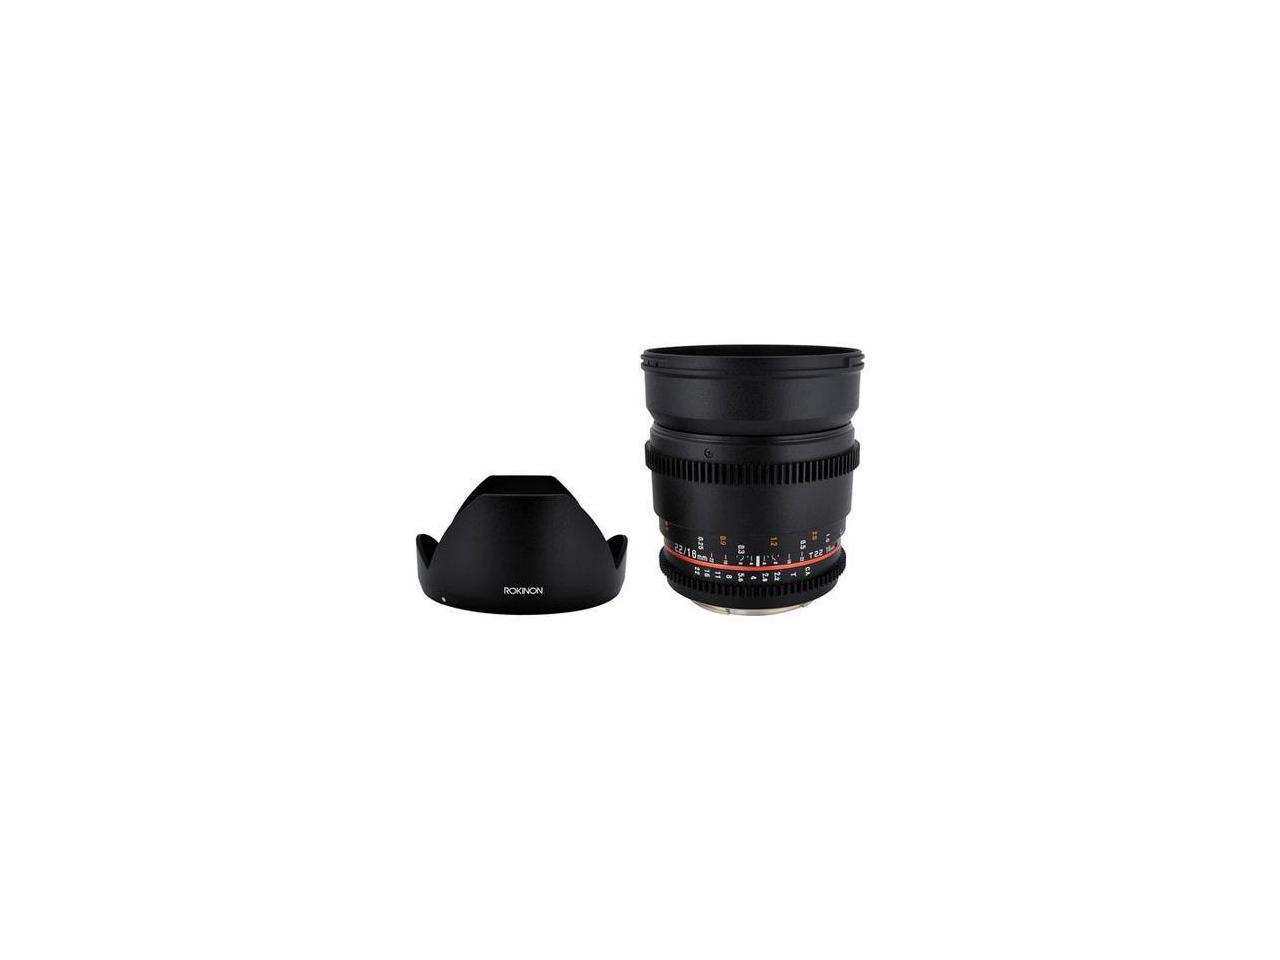 Rokinon CV16M-NEX 16mm T2.2 Cine Wide Angle Lens for Sony E-Mount Cameras